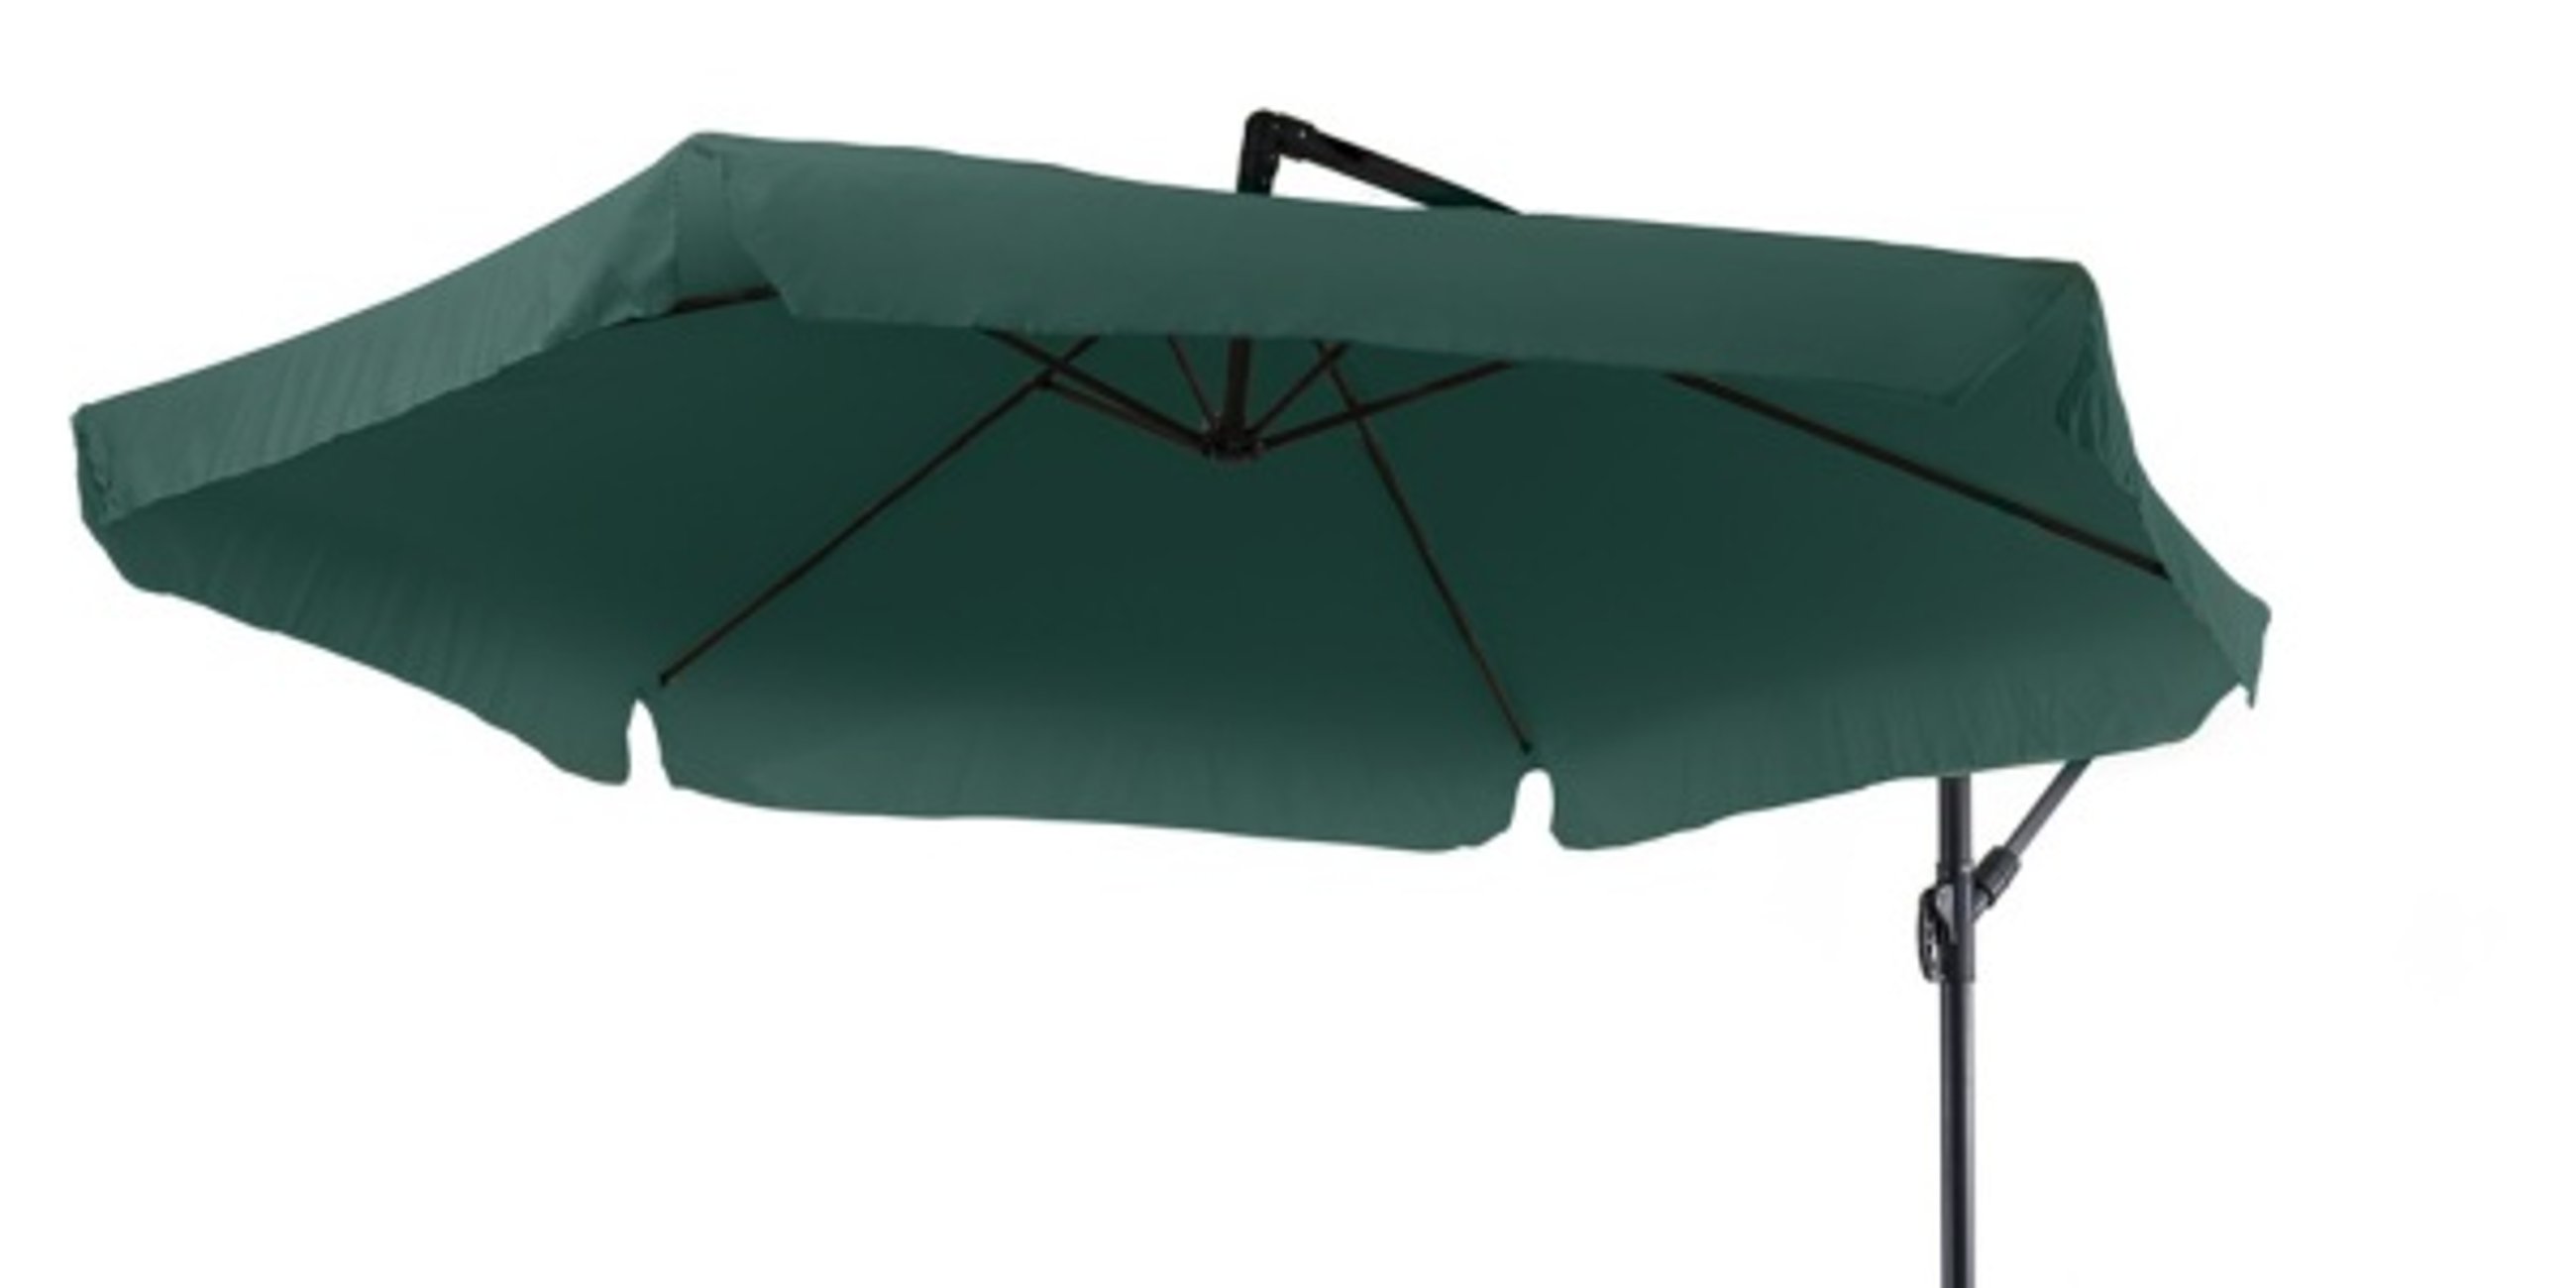 Poszycie parasola Empoli zielone wykonane jest z grubej poliestrowej tkaniny